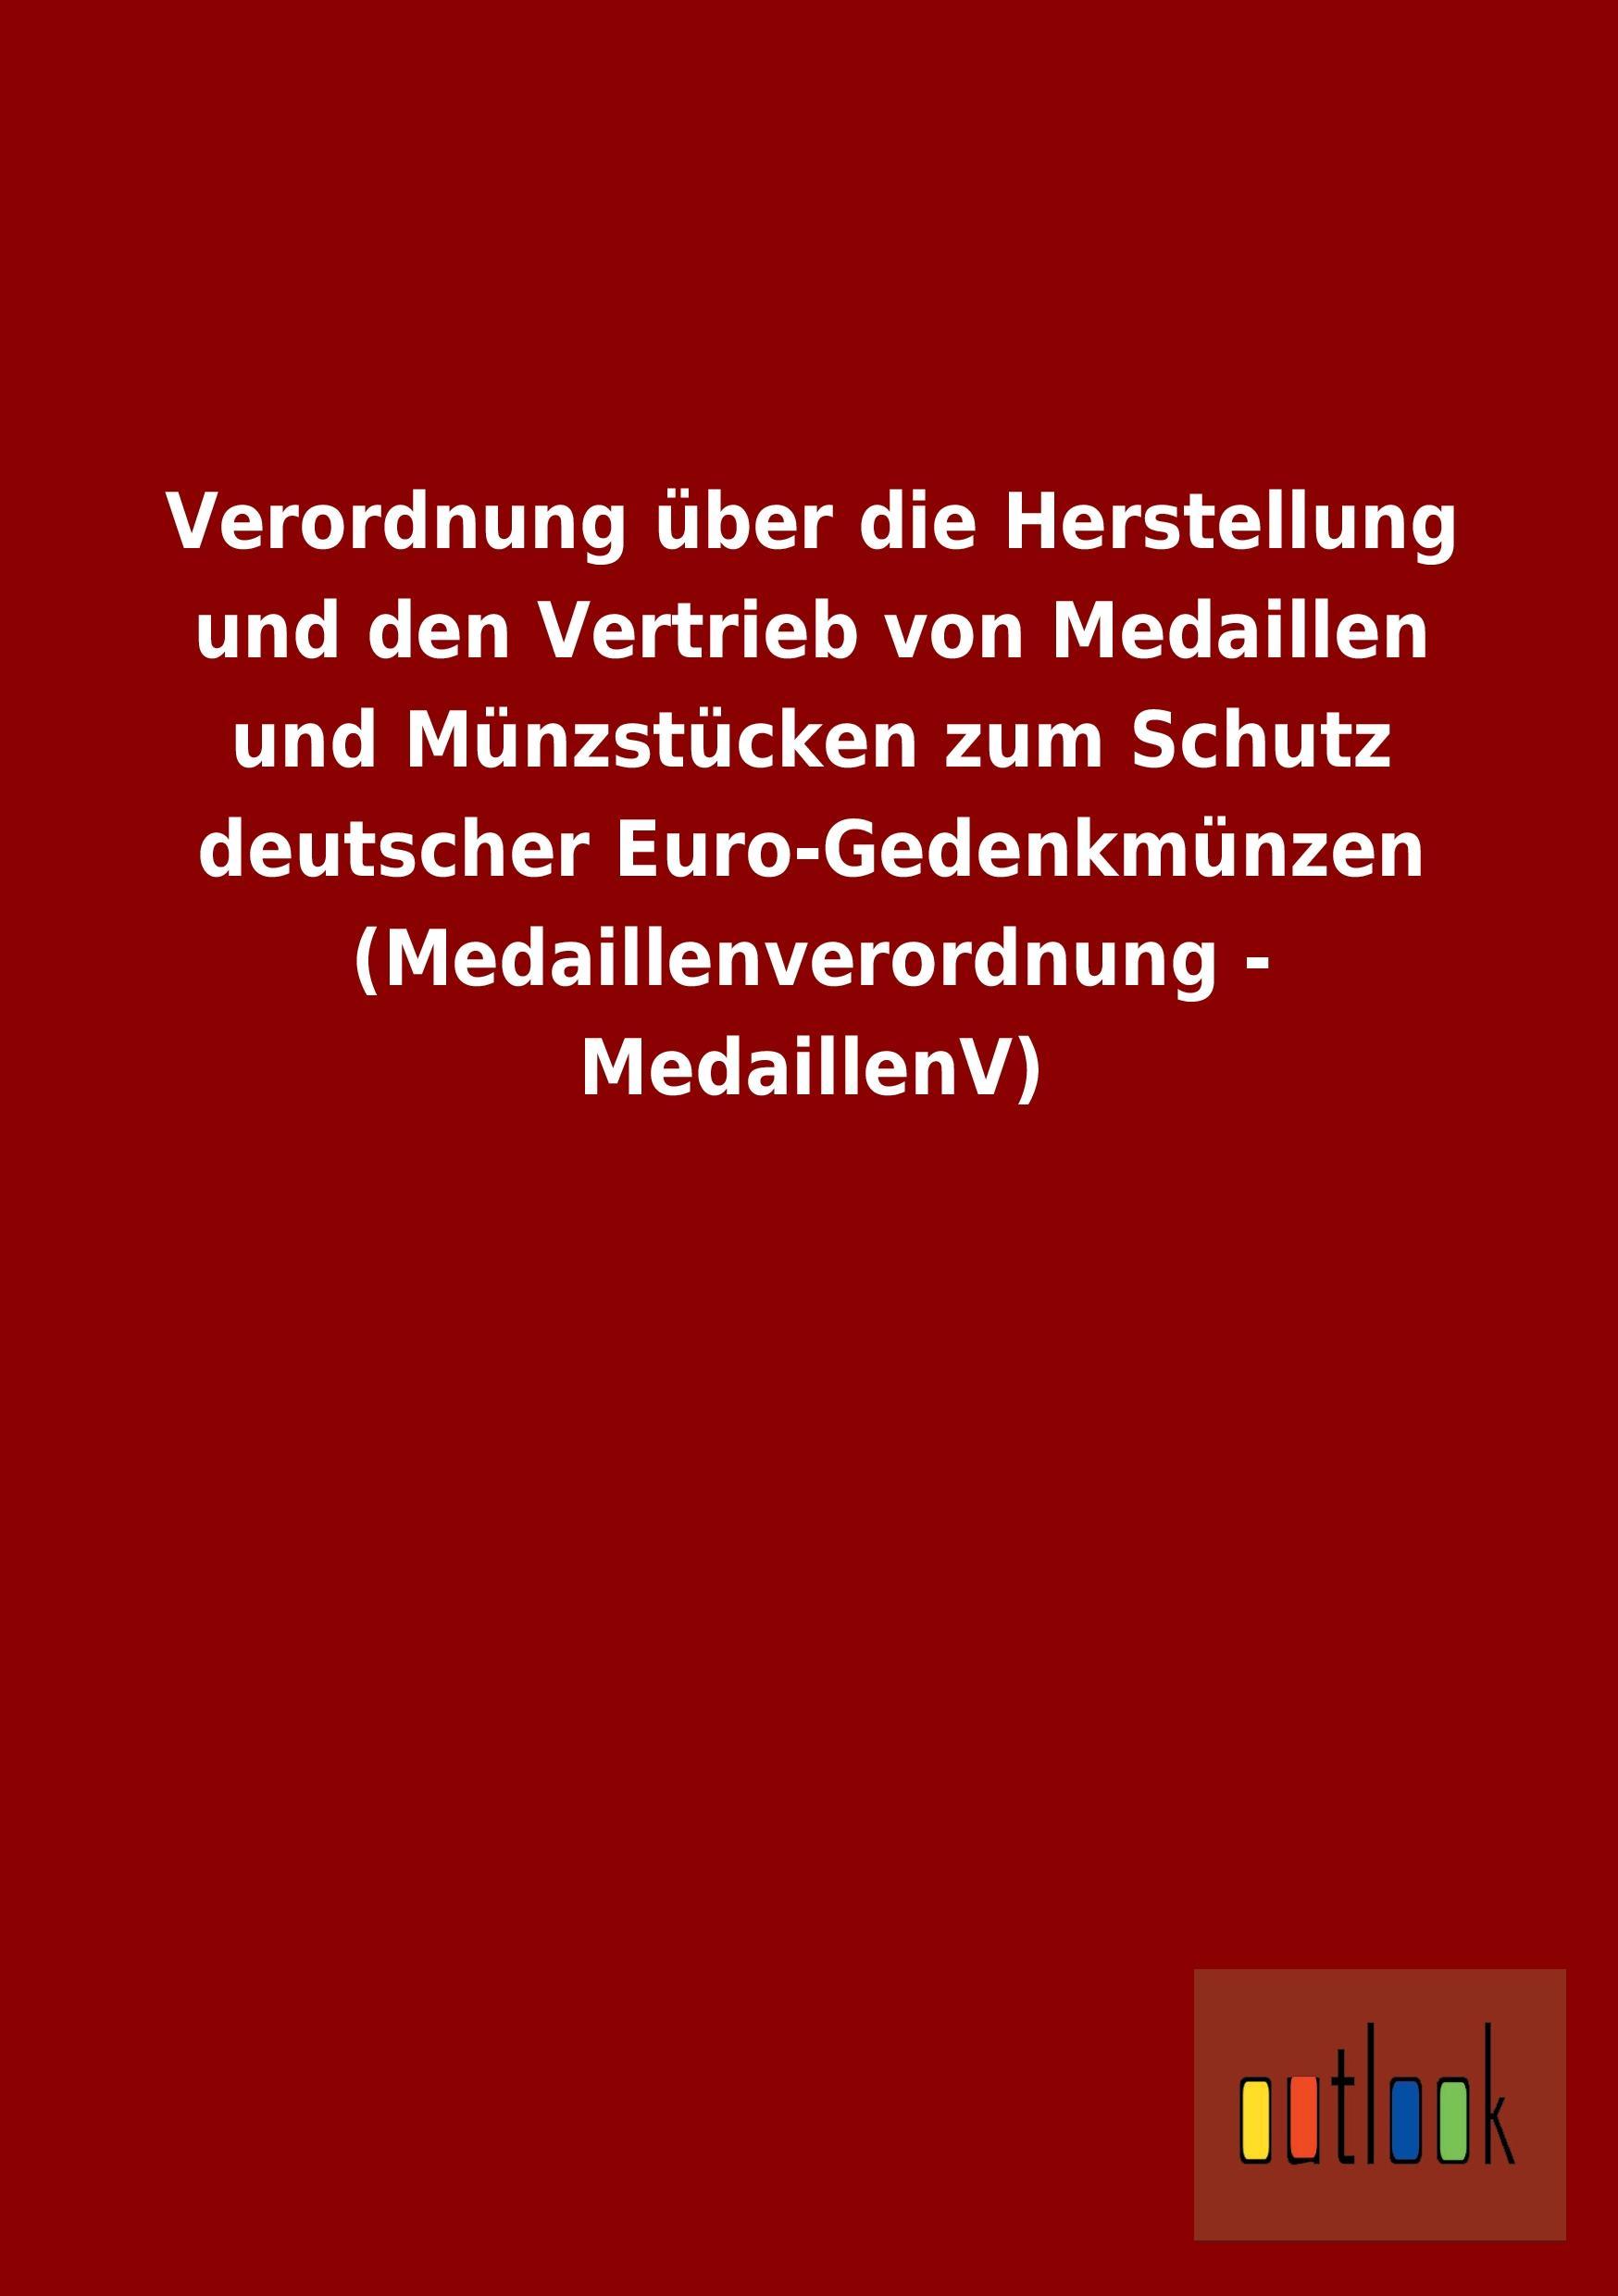 Verordnung ueber die Herstellung und den Vertrieb von Medaillen und Muenzstuecken zum Schutz deutscher Euro-Gedenkmuenzen (Medaillenverordnung - MedaillenV) - Ohne Autor